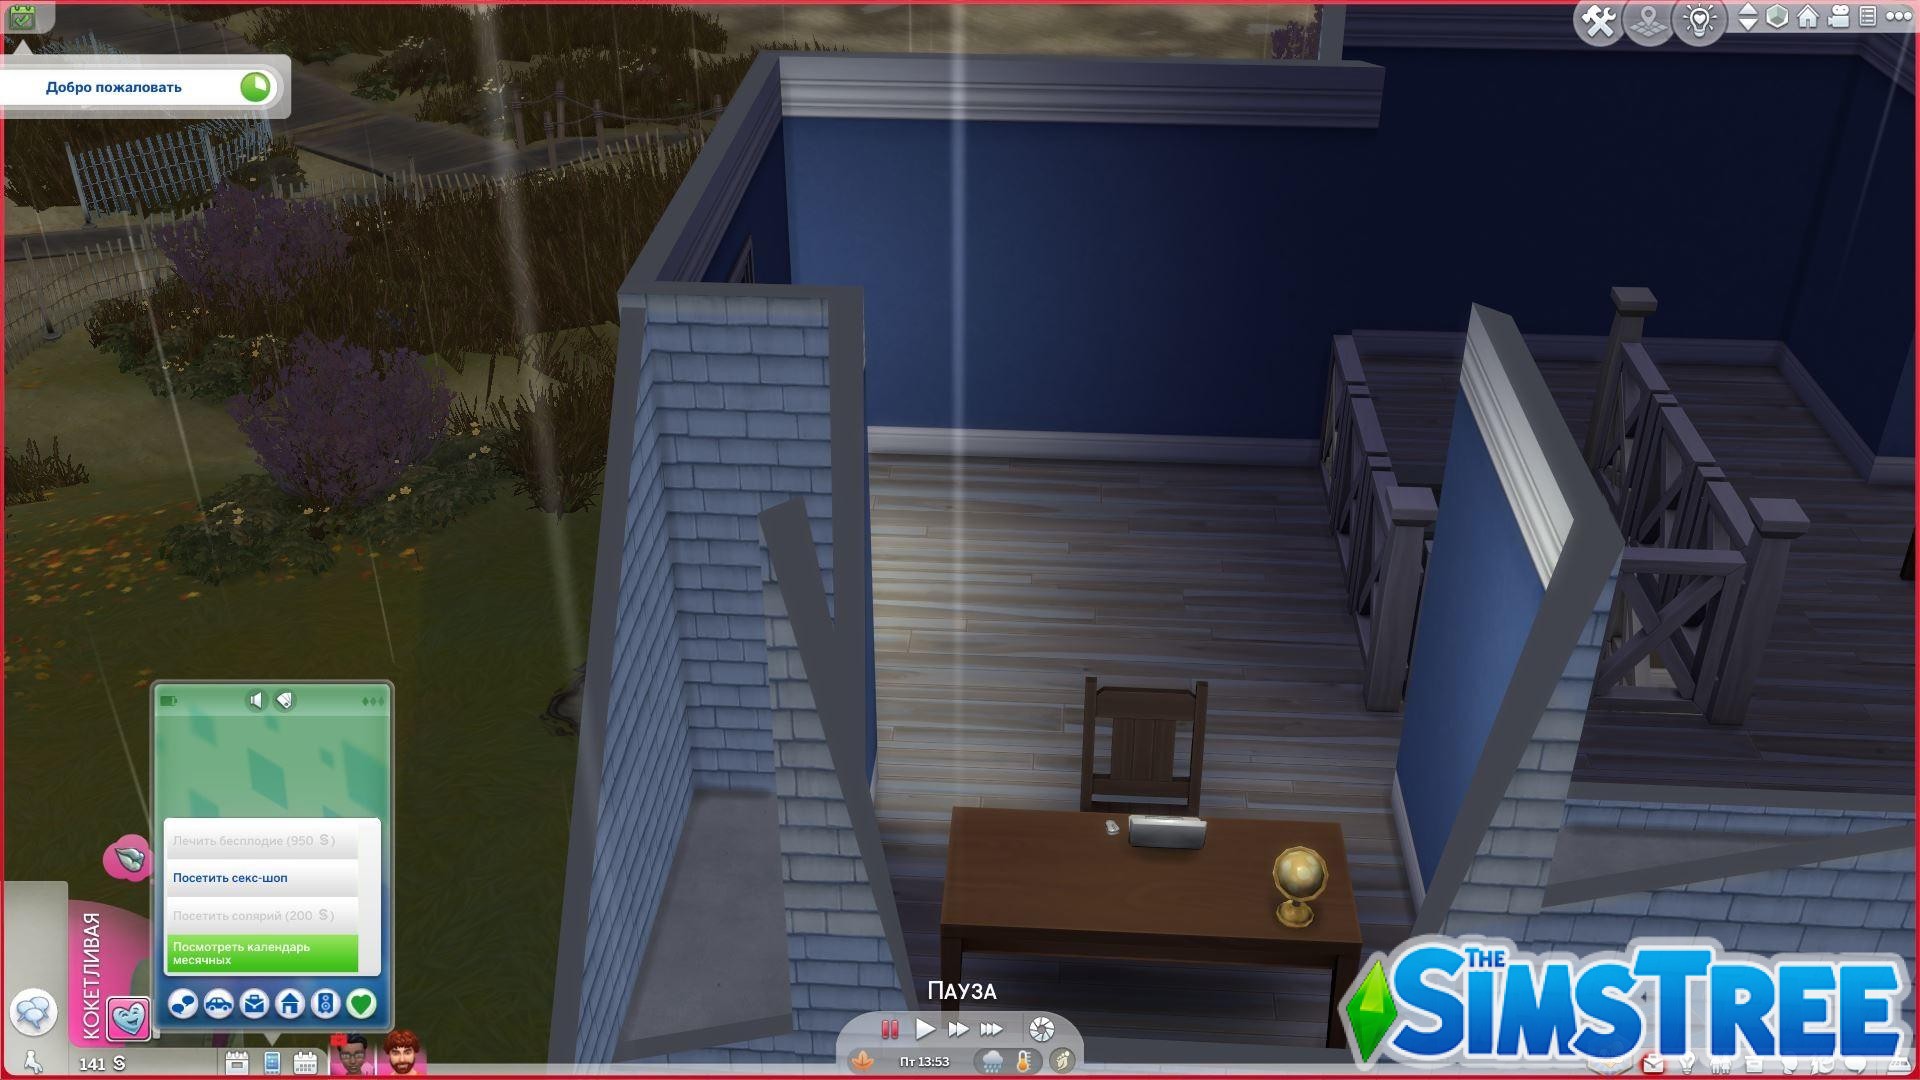 Sims 4: Зачем нужен и что можно сделать с модом Wonderful Whims от TURBODRIVER